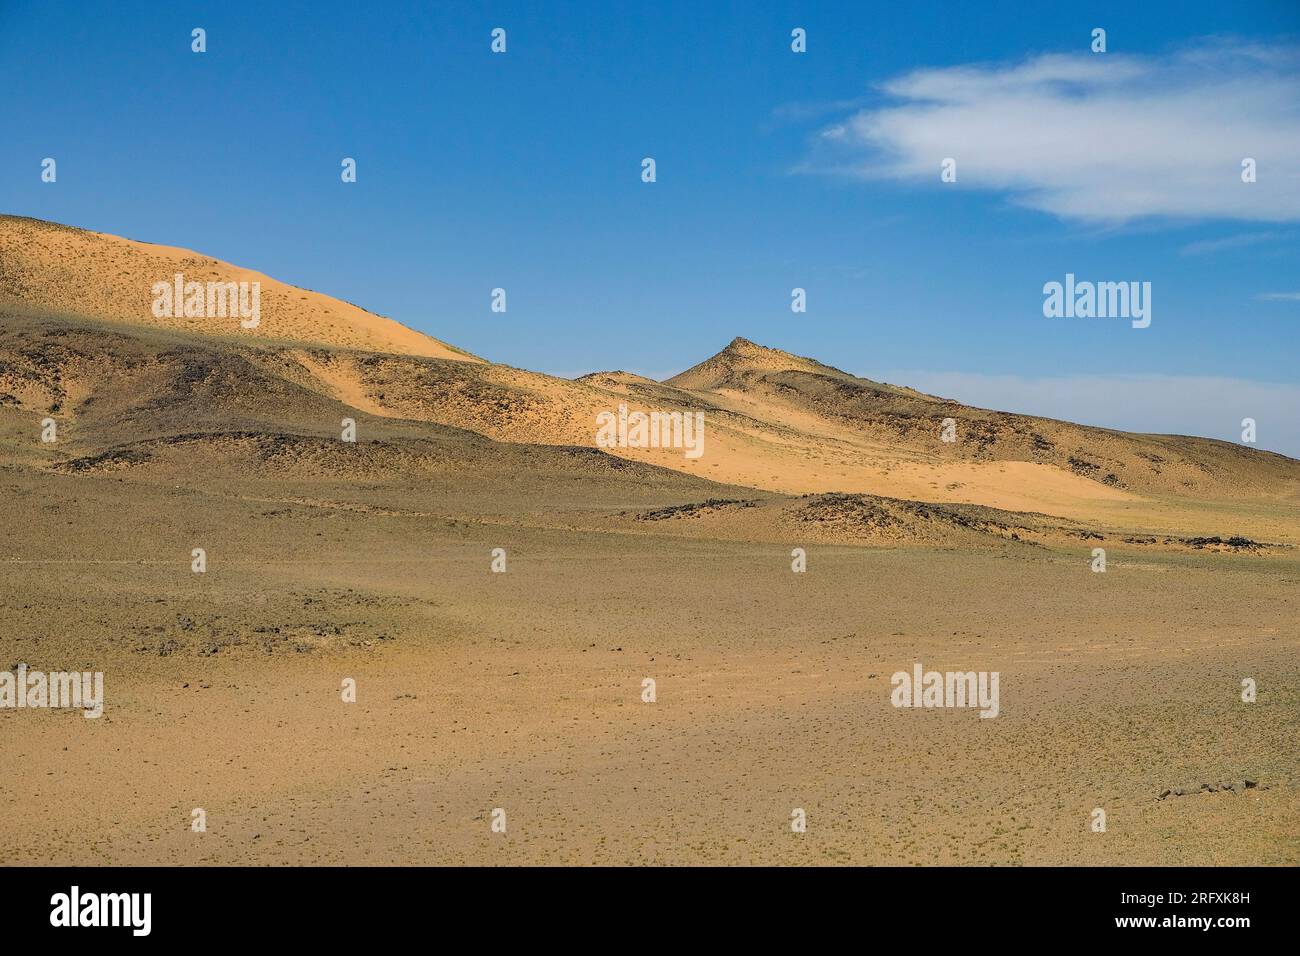 Khongor Sand Dunes in the Gobi Desert in Mongolia. Stock Photo